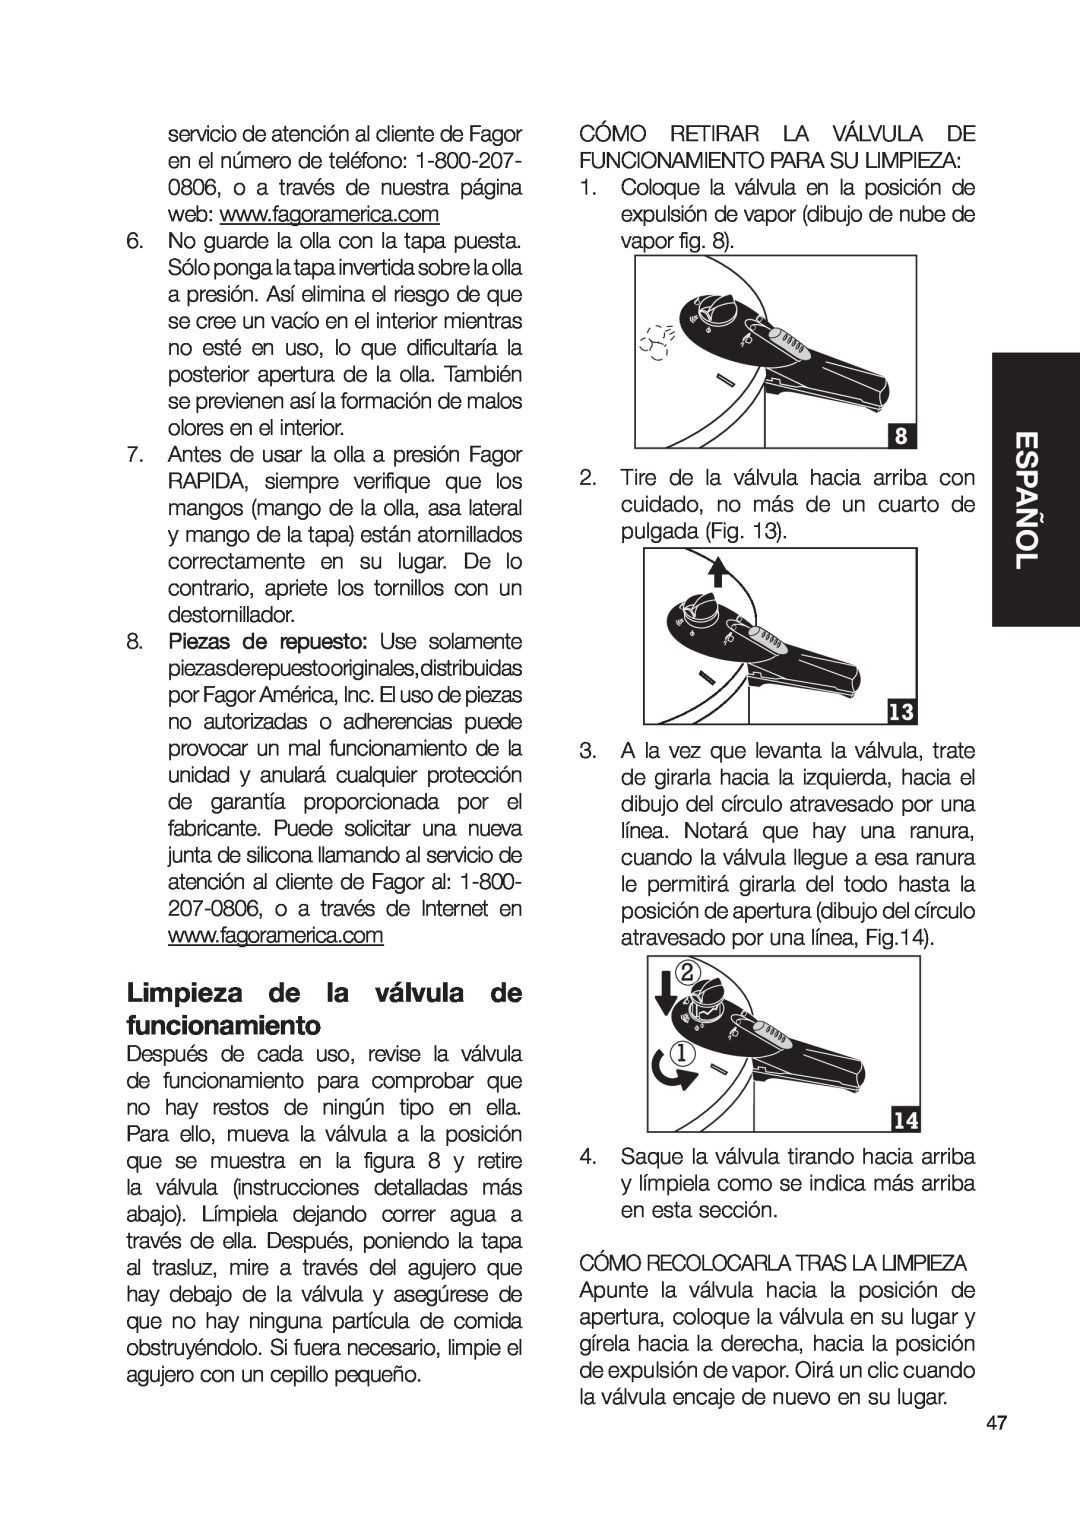 Fagor America Fagor Rapida Pressure Cooker user manual Limpieza de la válvula de funcionamiento, Español 